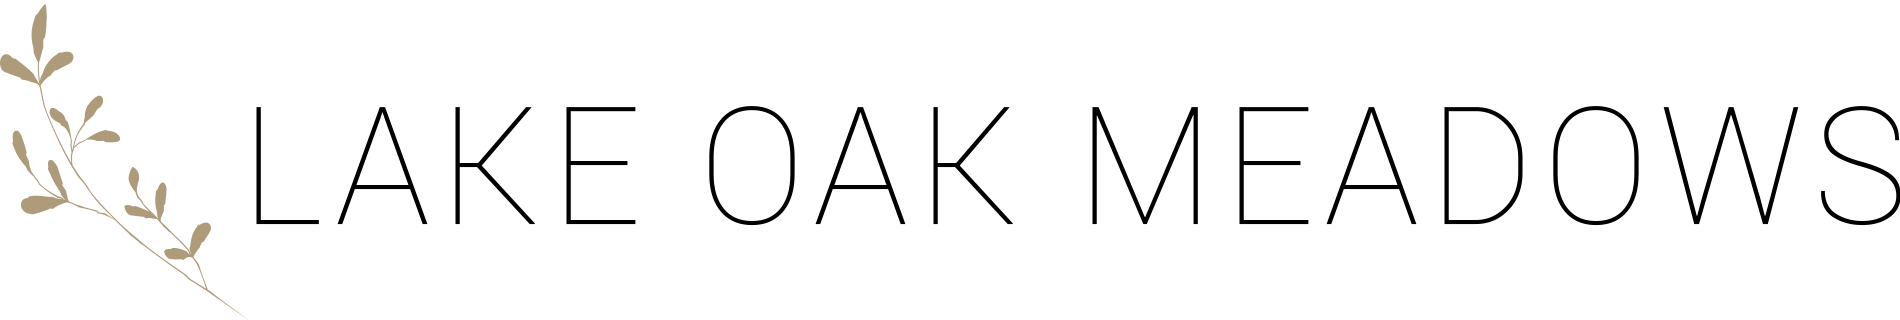 Lake Oak Meadows logo